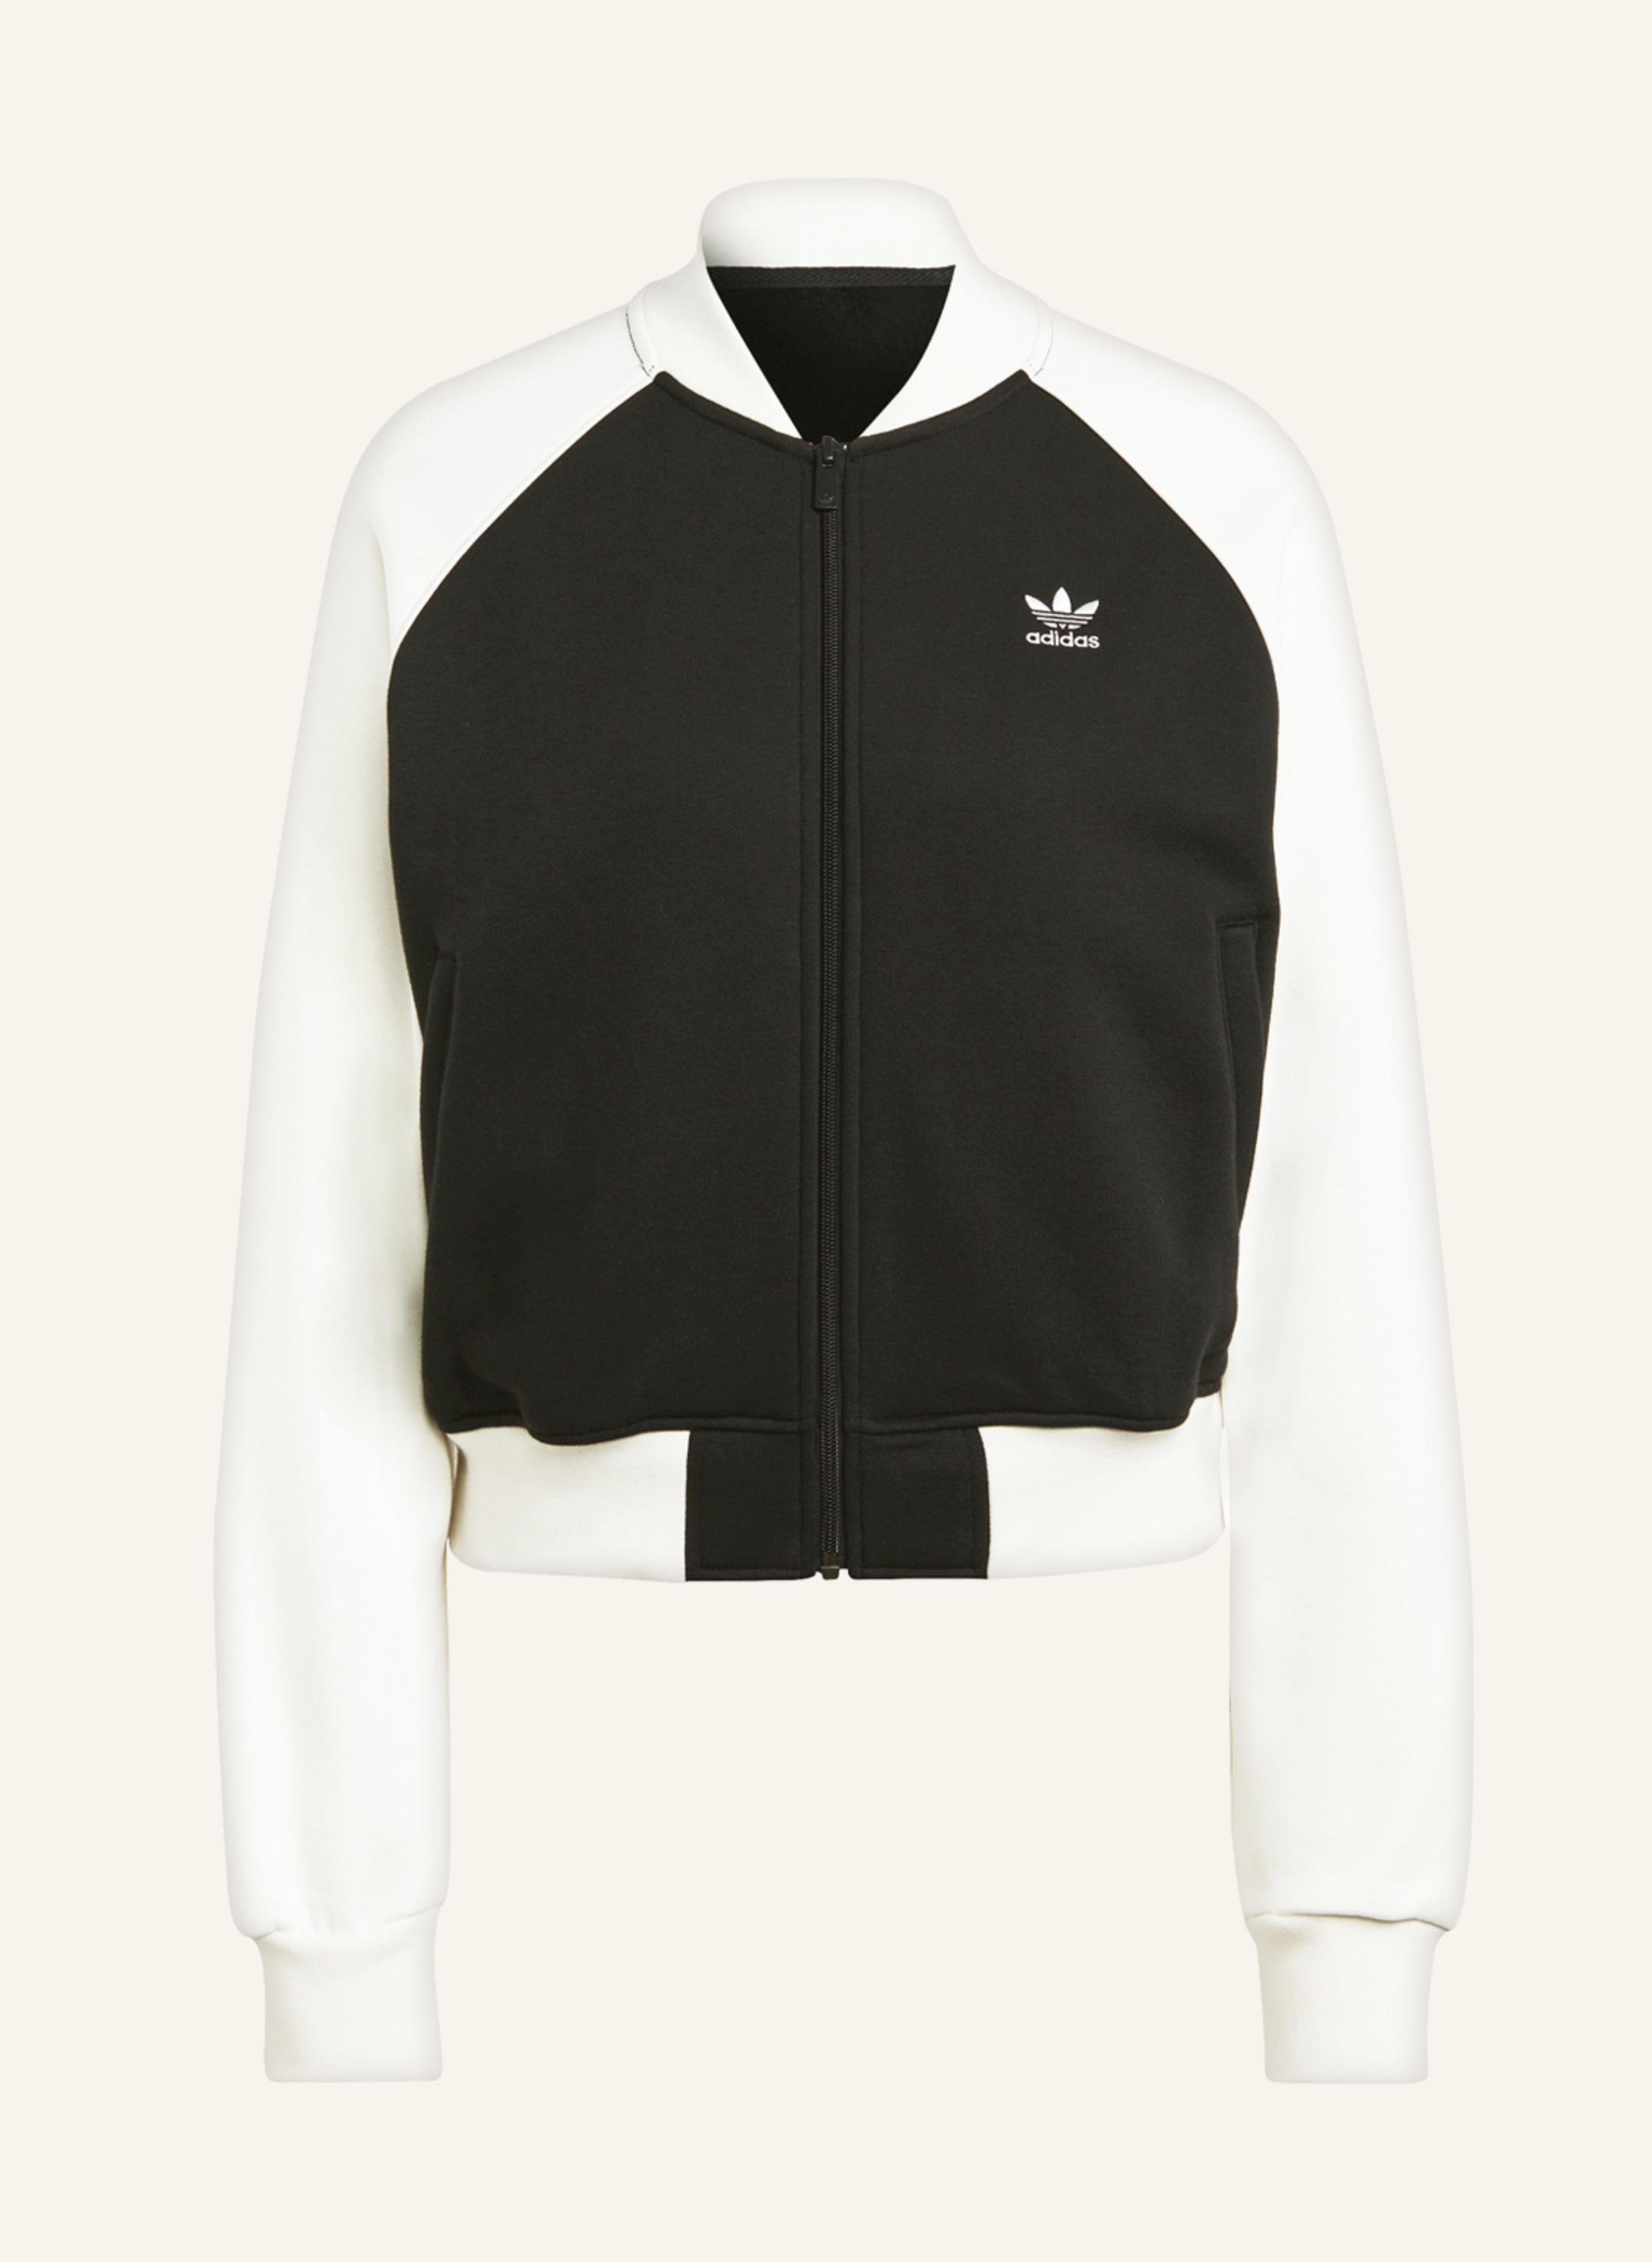 adidas Originals Sweat jacket ADICOLOR CLASSICS TREFOIL in black/ ecru